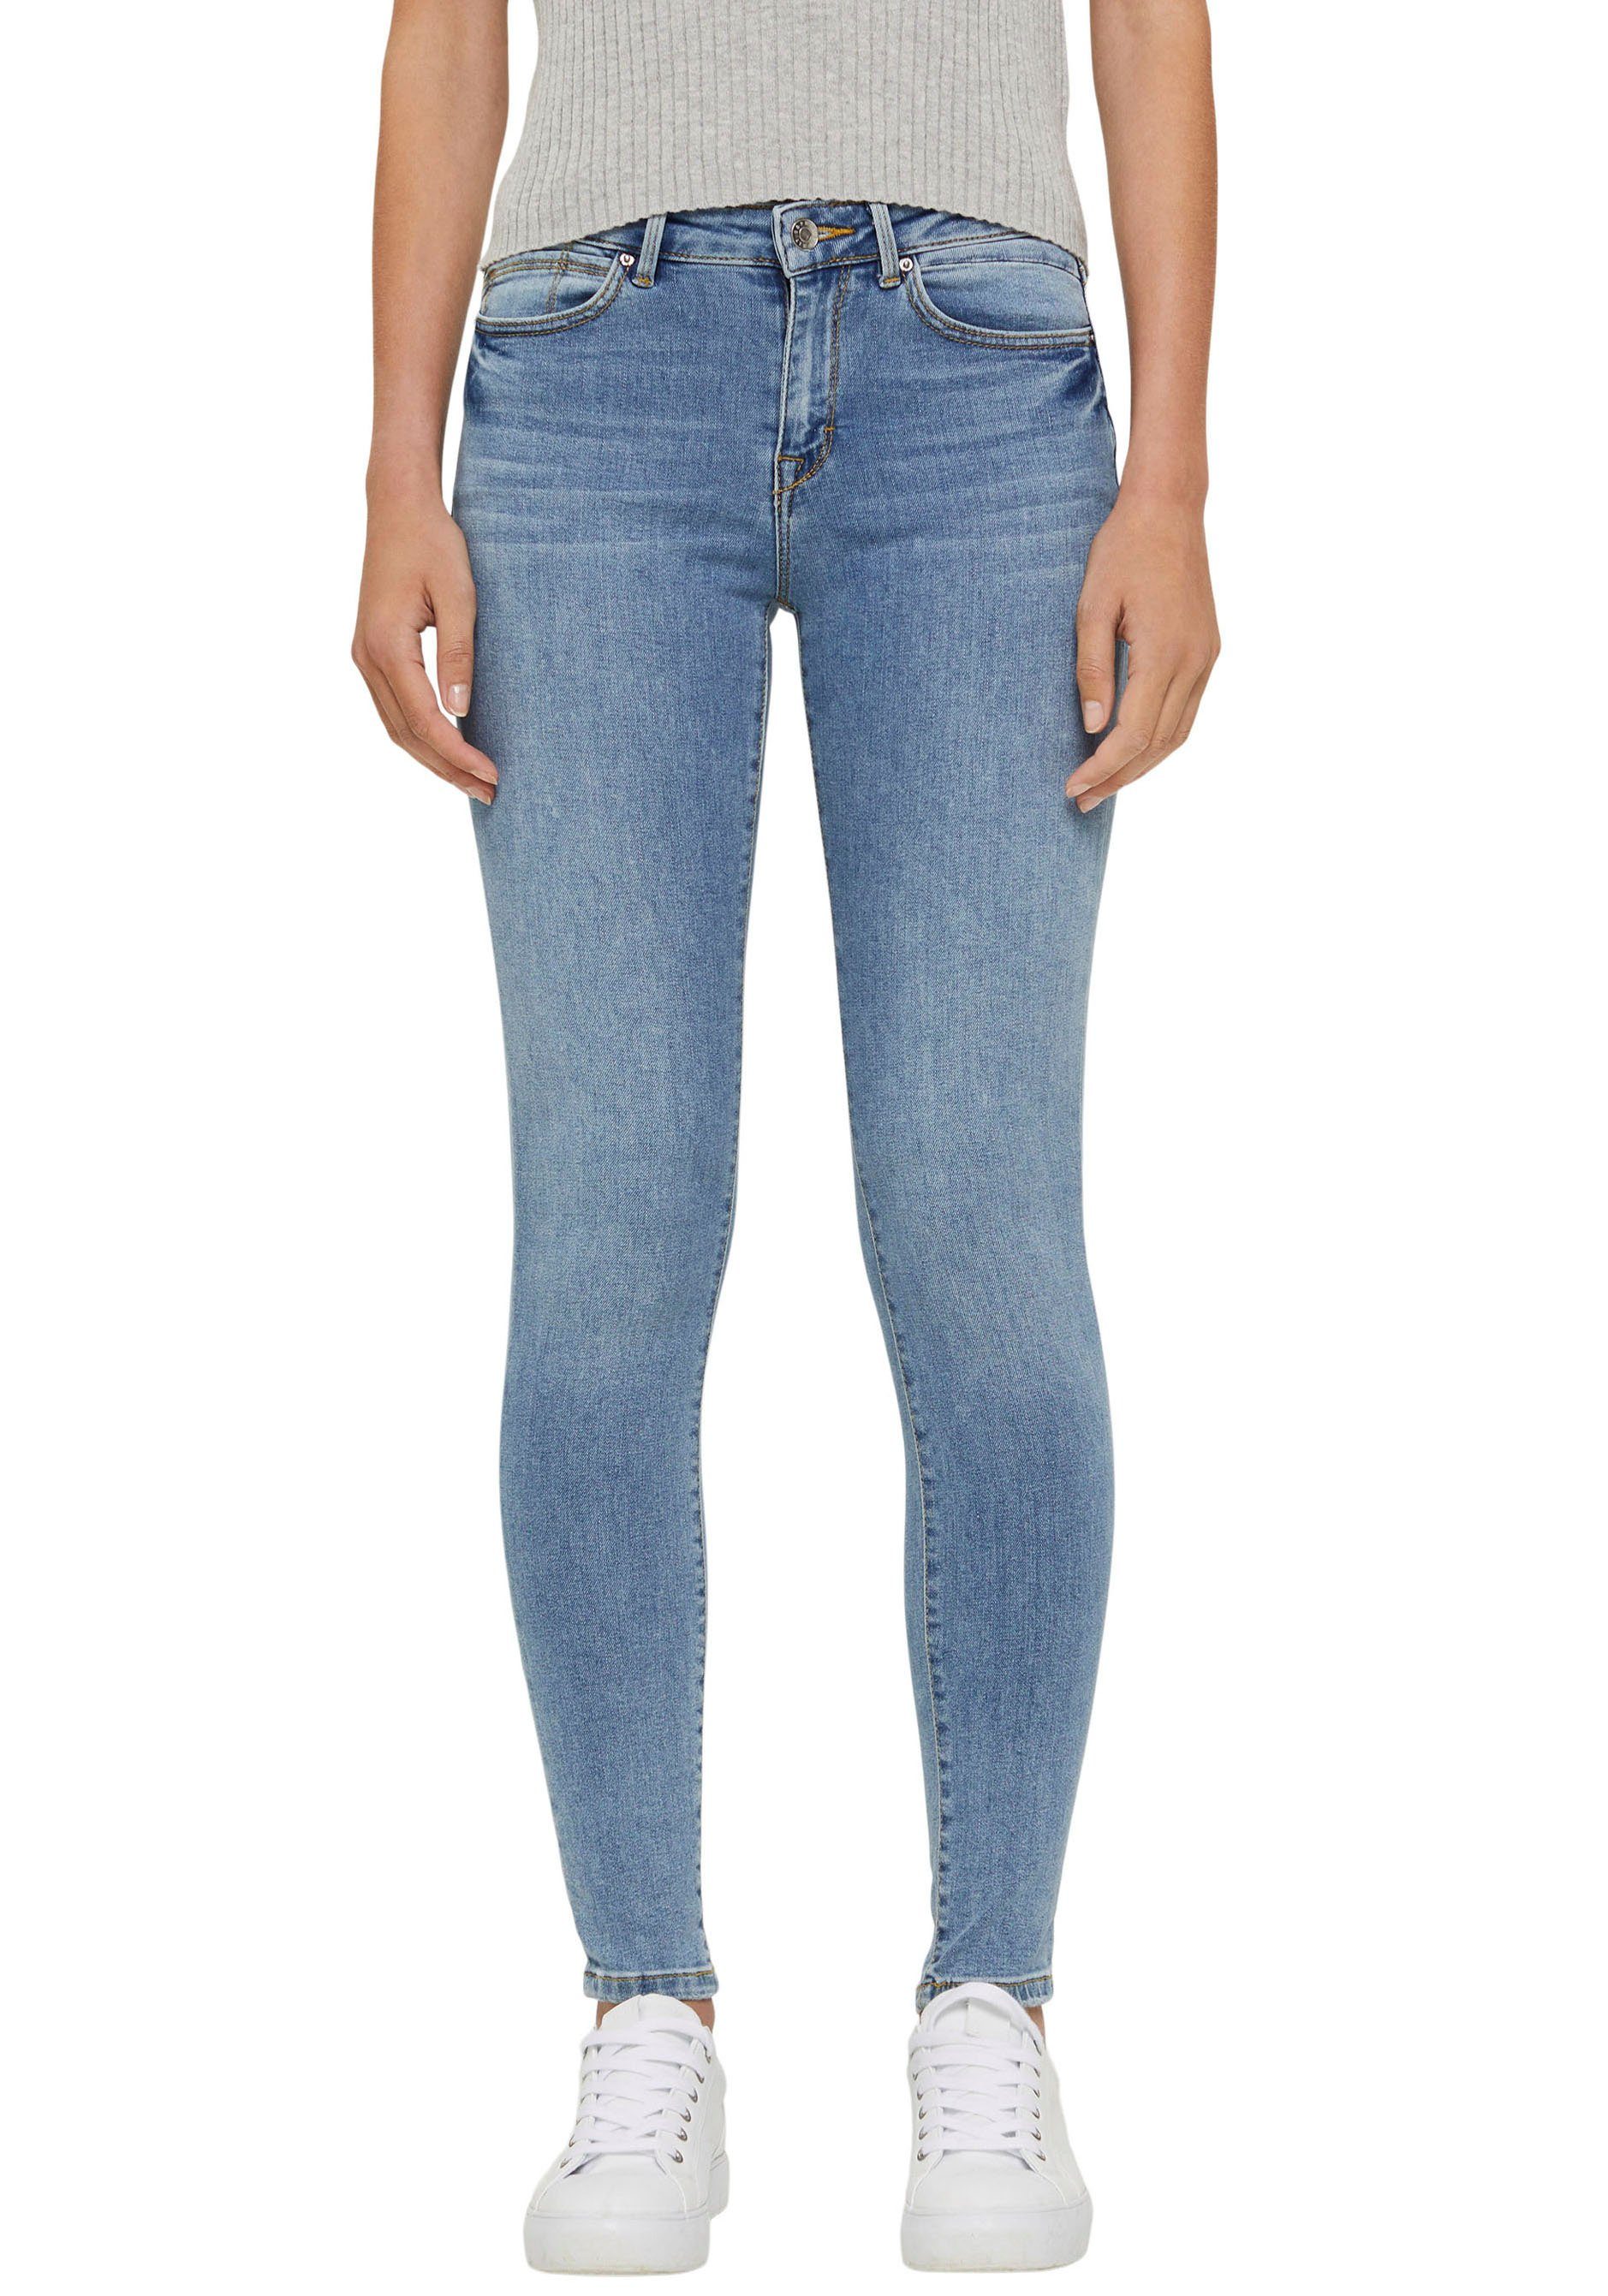 Esprit Damen Jeans online kaufen | OTTO